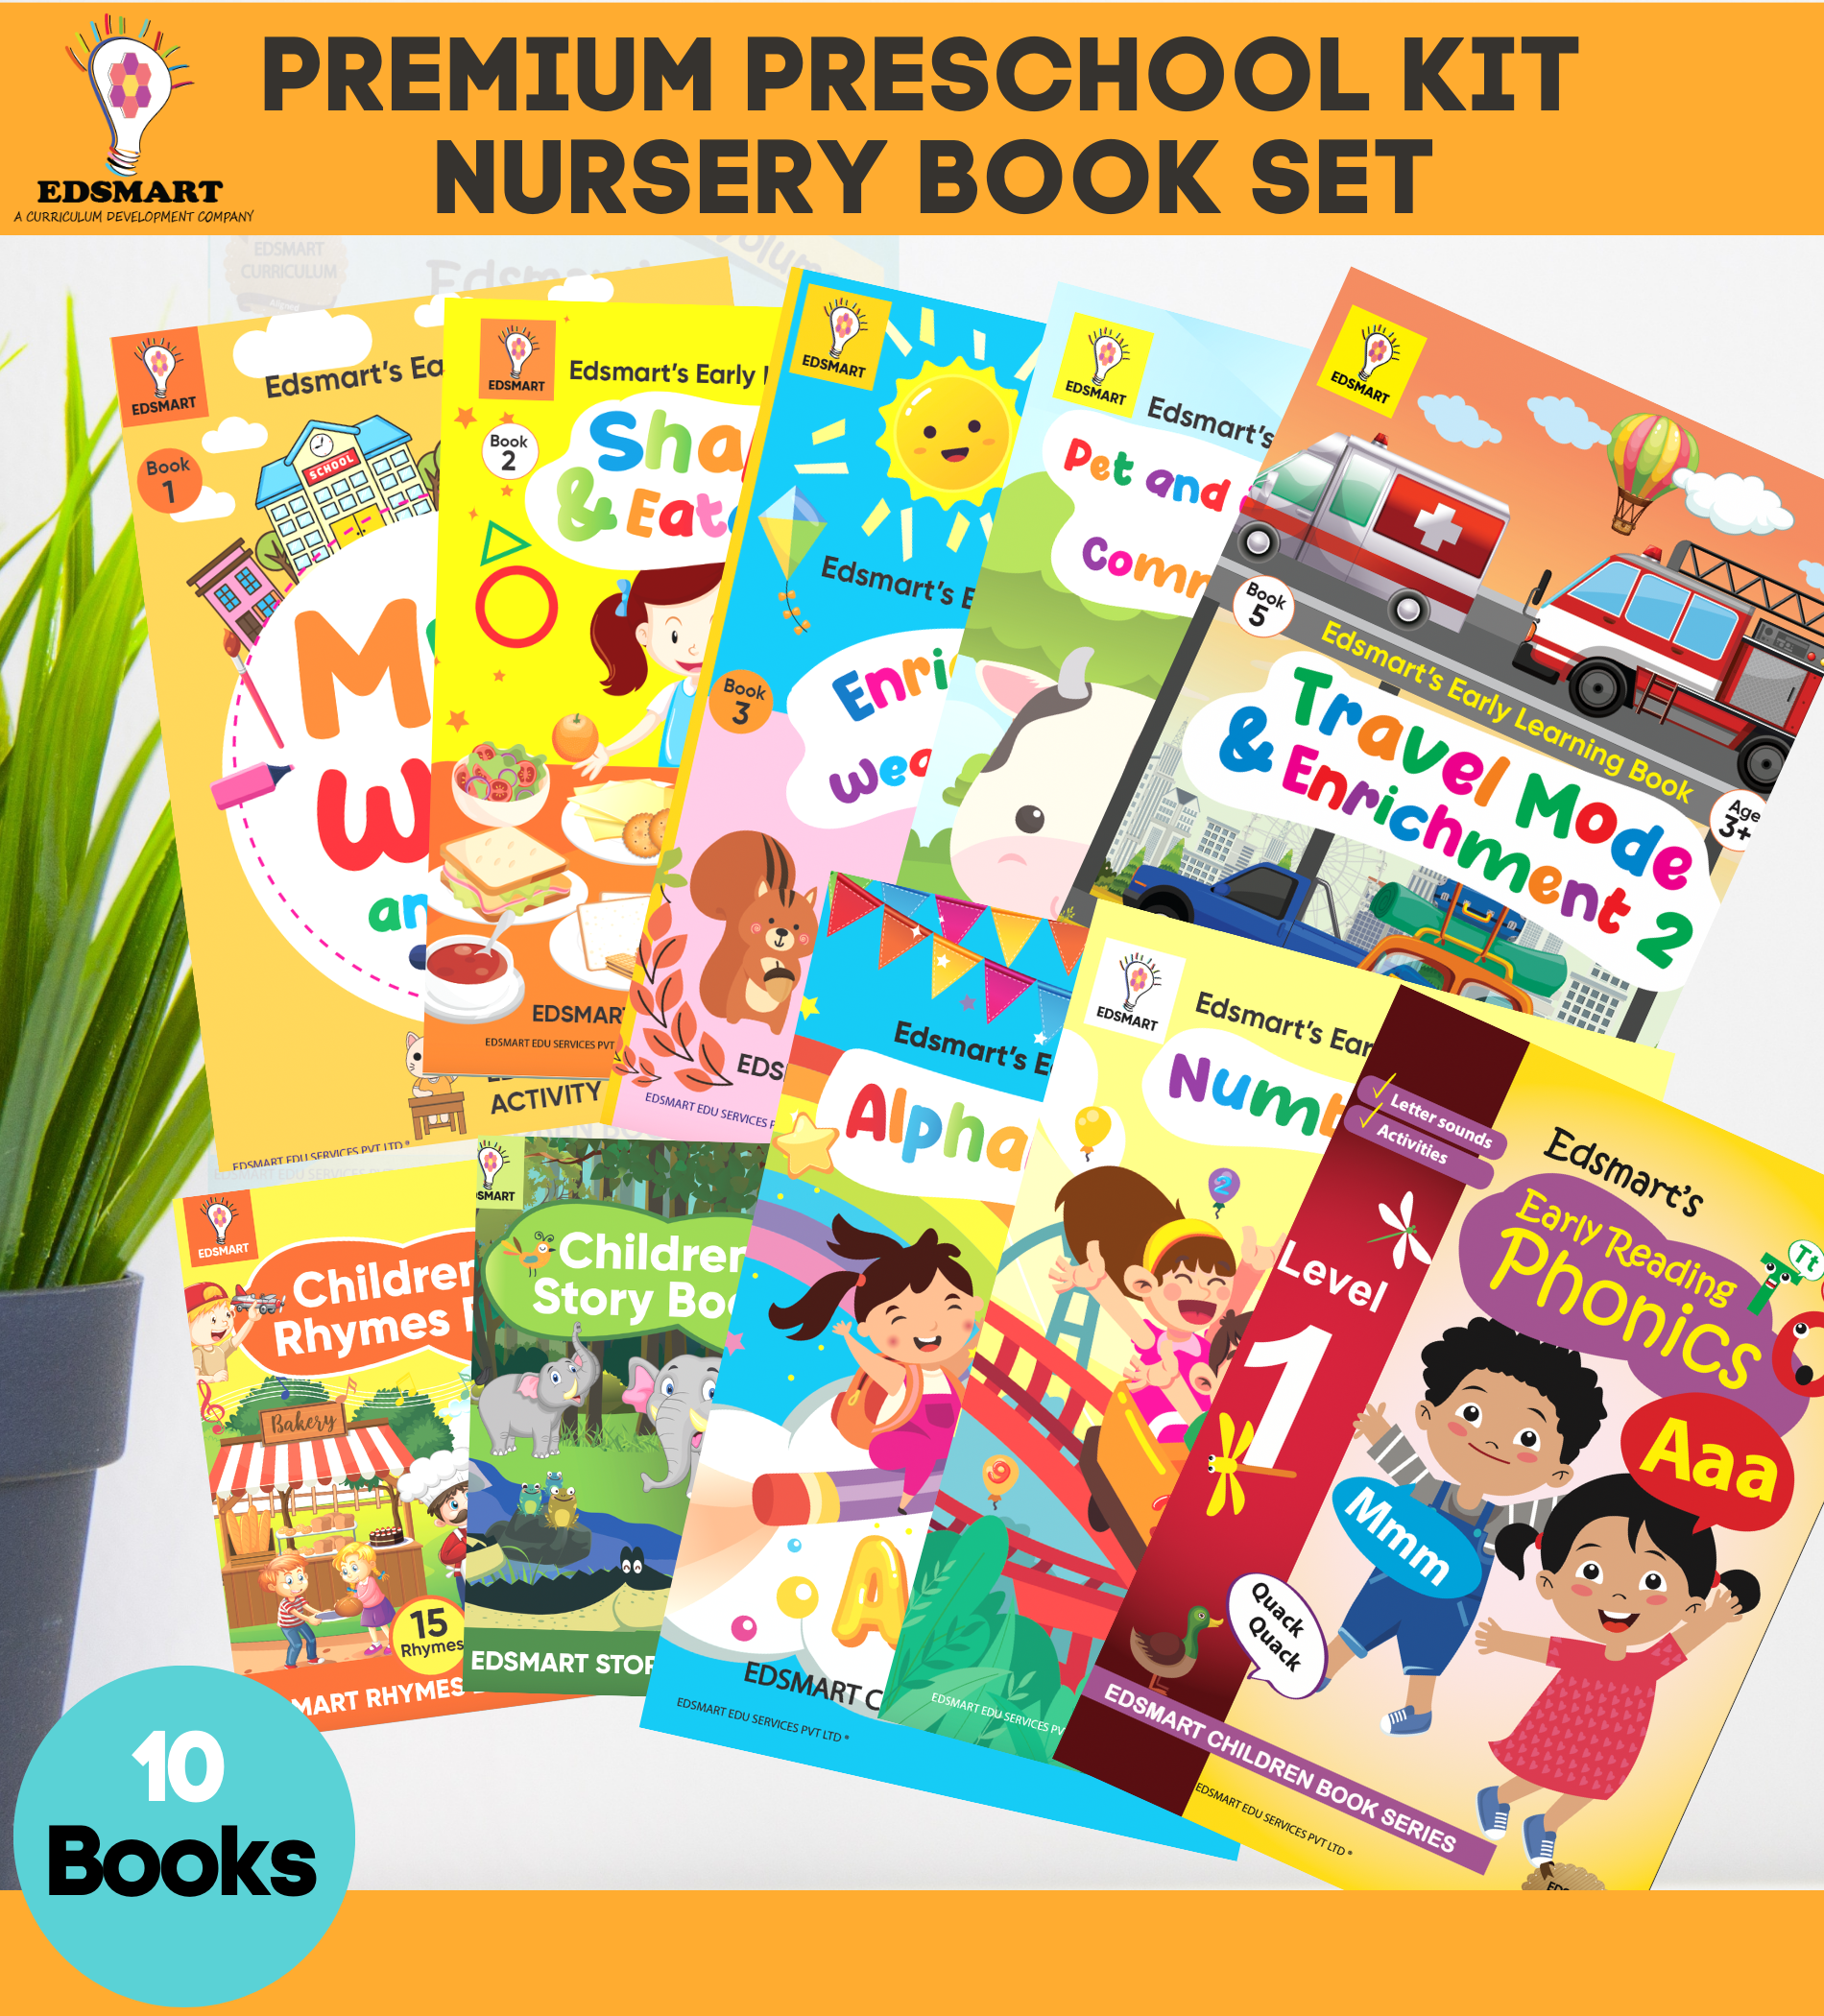 Edsmart Nursery Preschool Books and Kits 